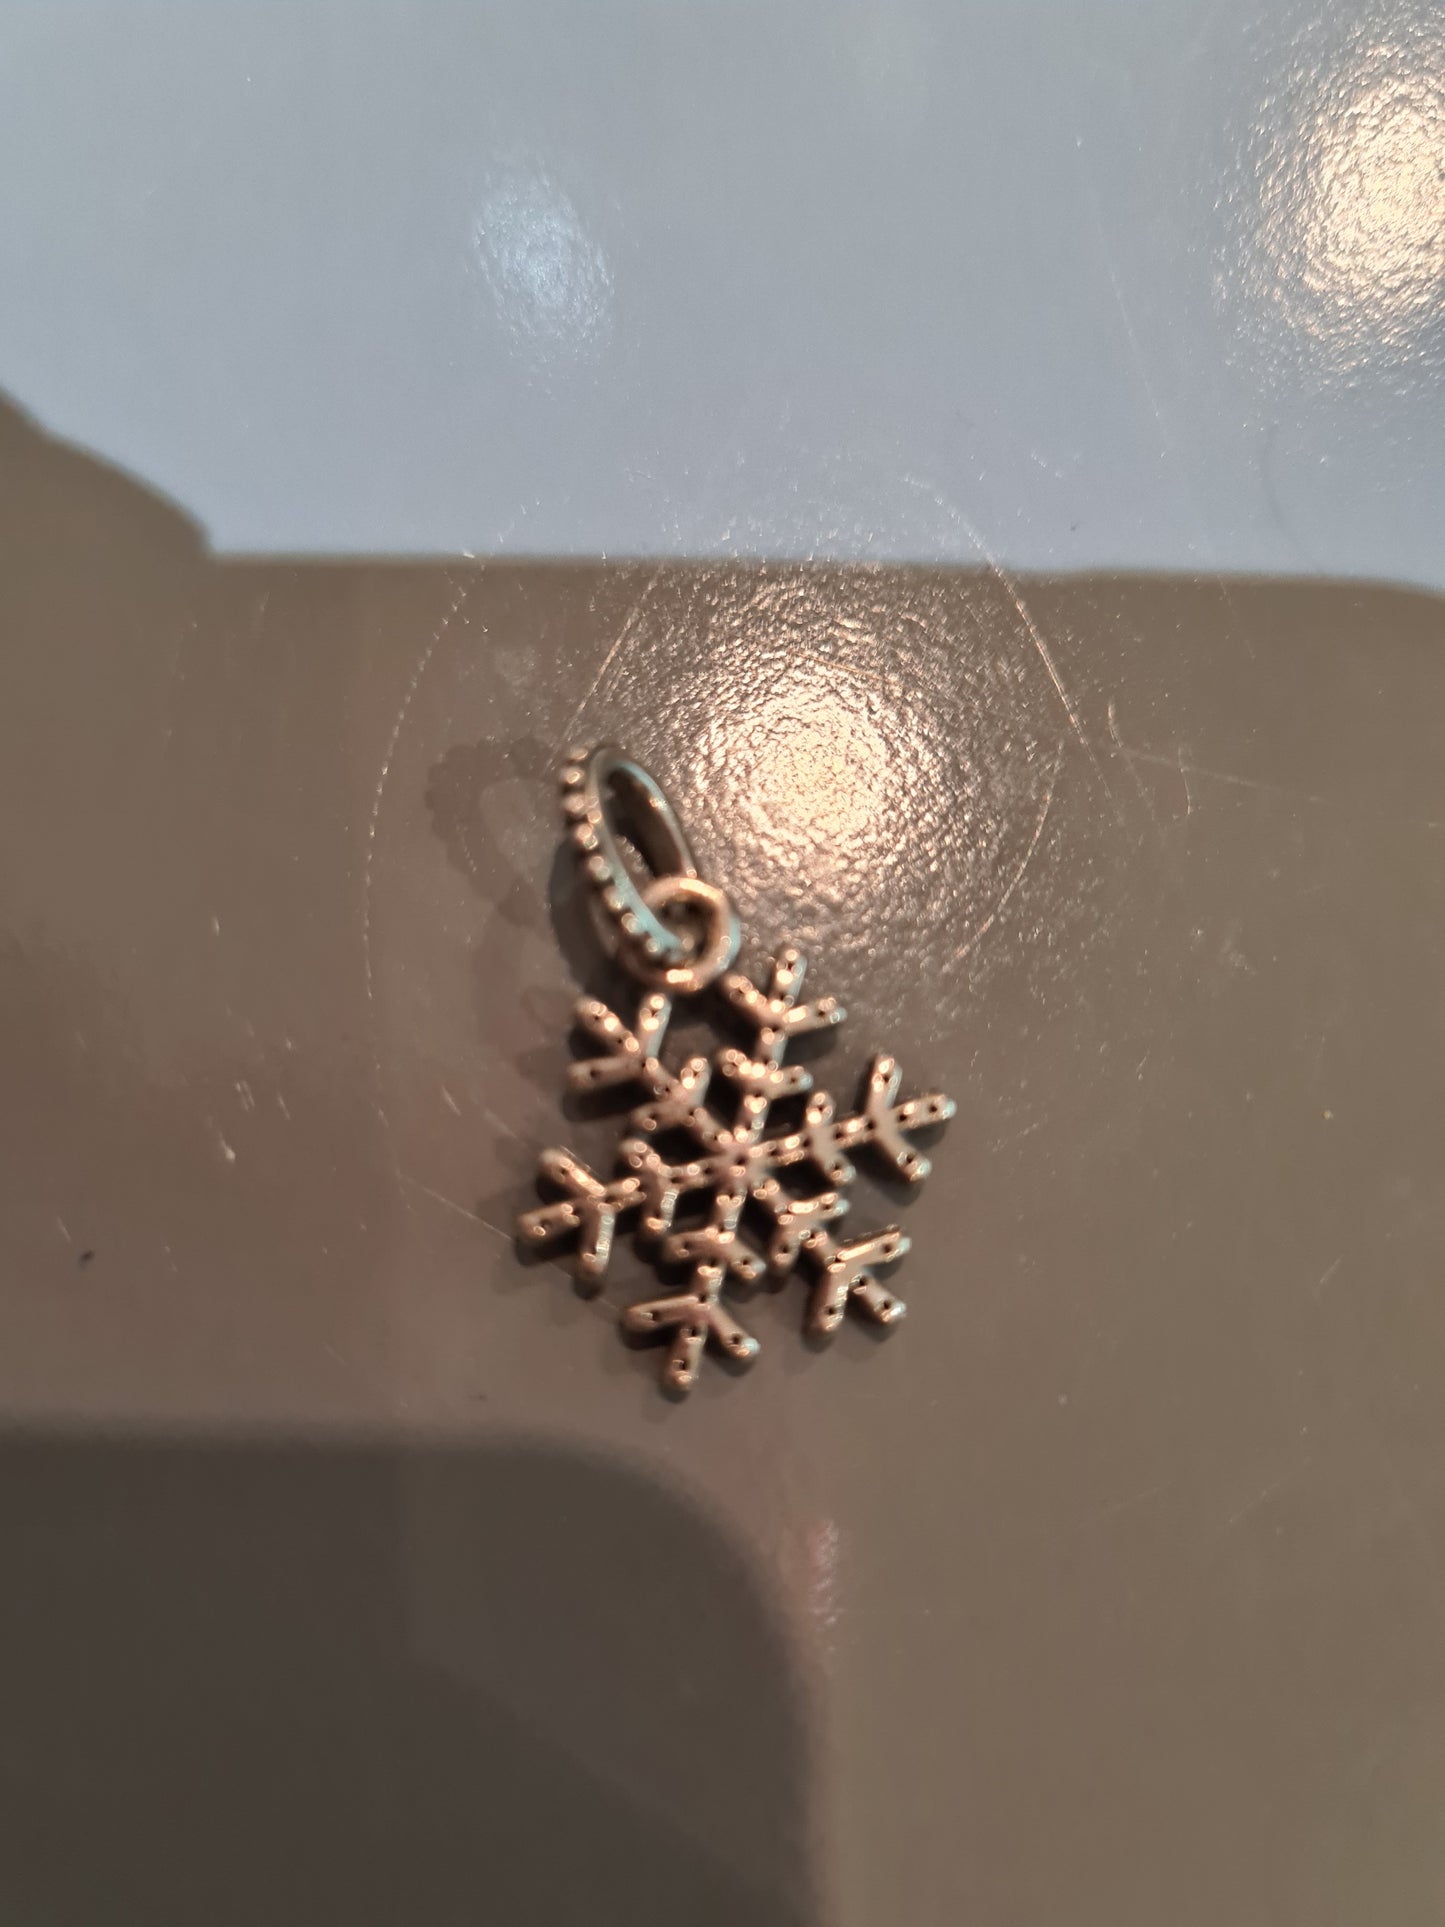 Genuine Pandora Snowflake Pave Sparkle Charm Pendant Xmas Christmas